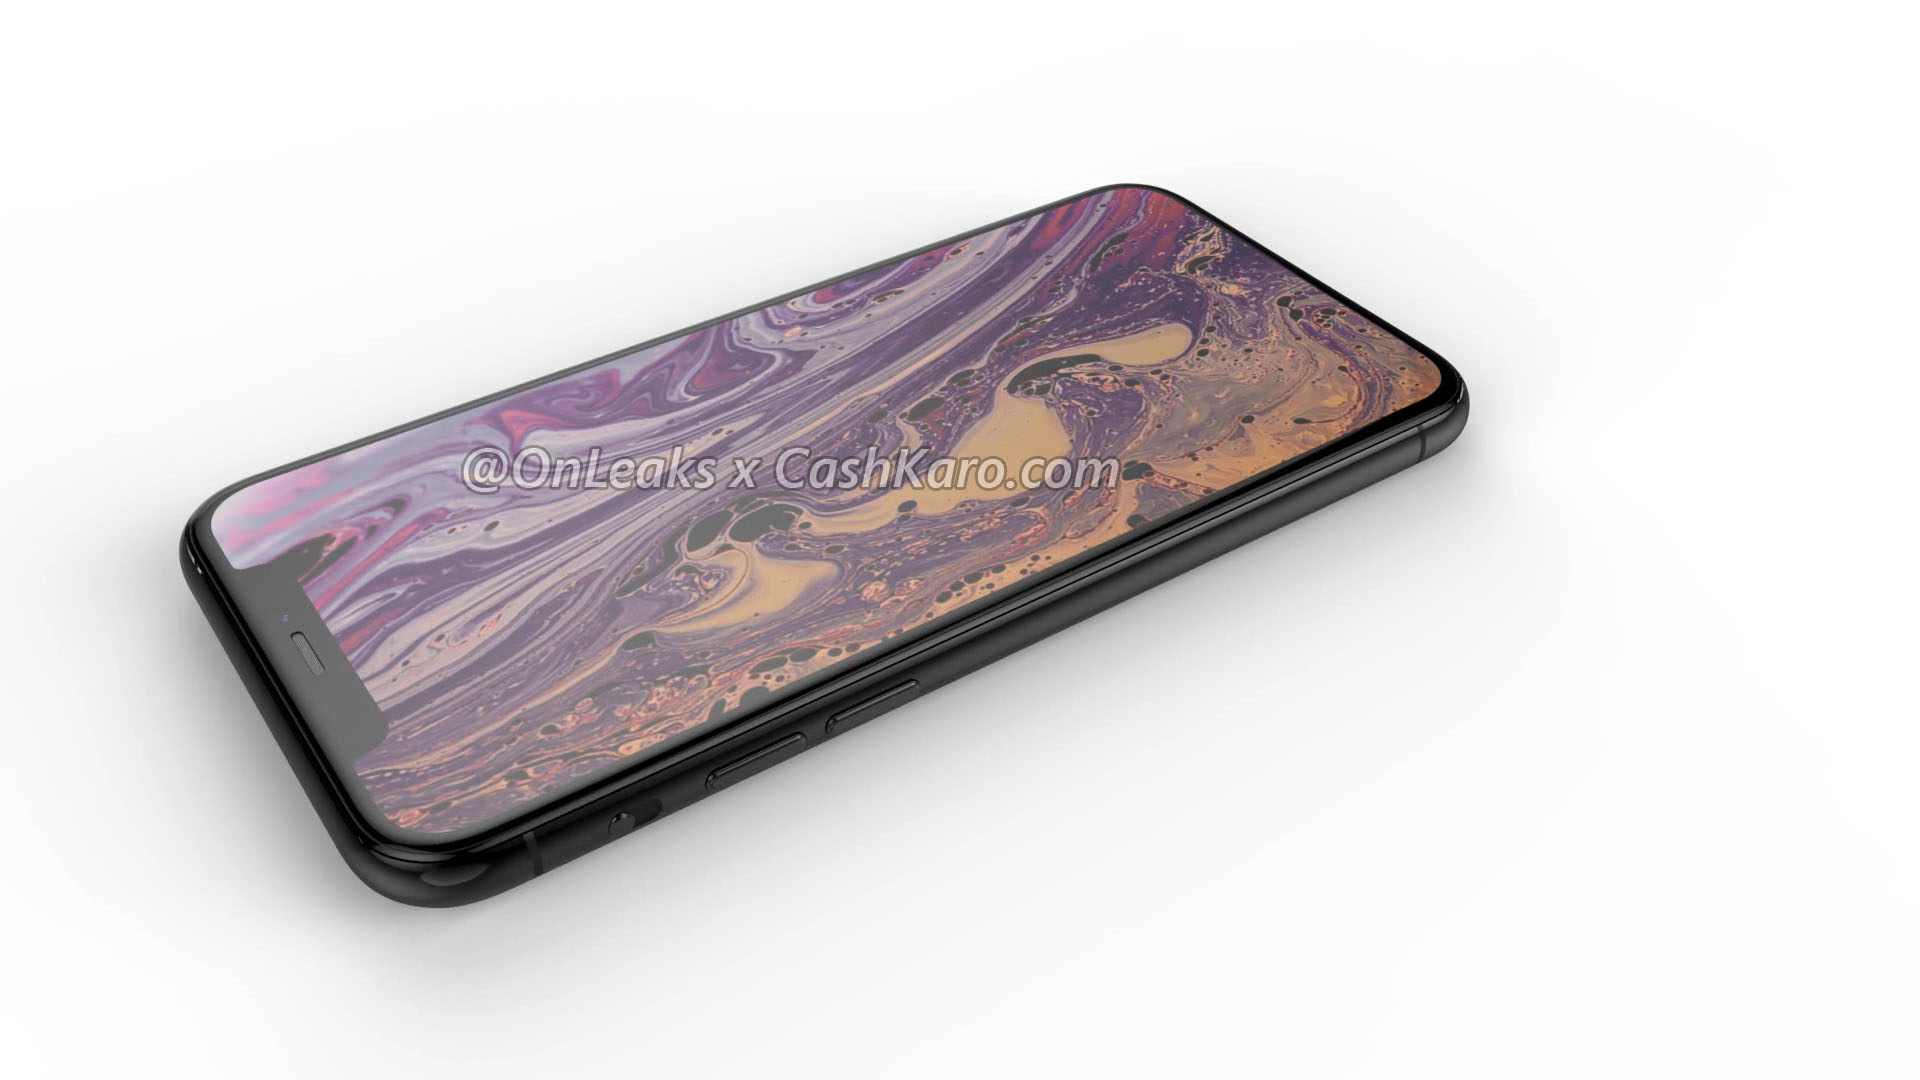 Apple iPhone 2019 11 XI Xs rendery Onleaks kiedy premiera przecieki plotki